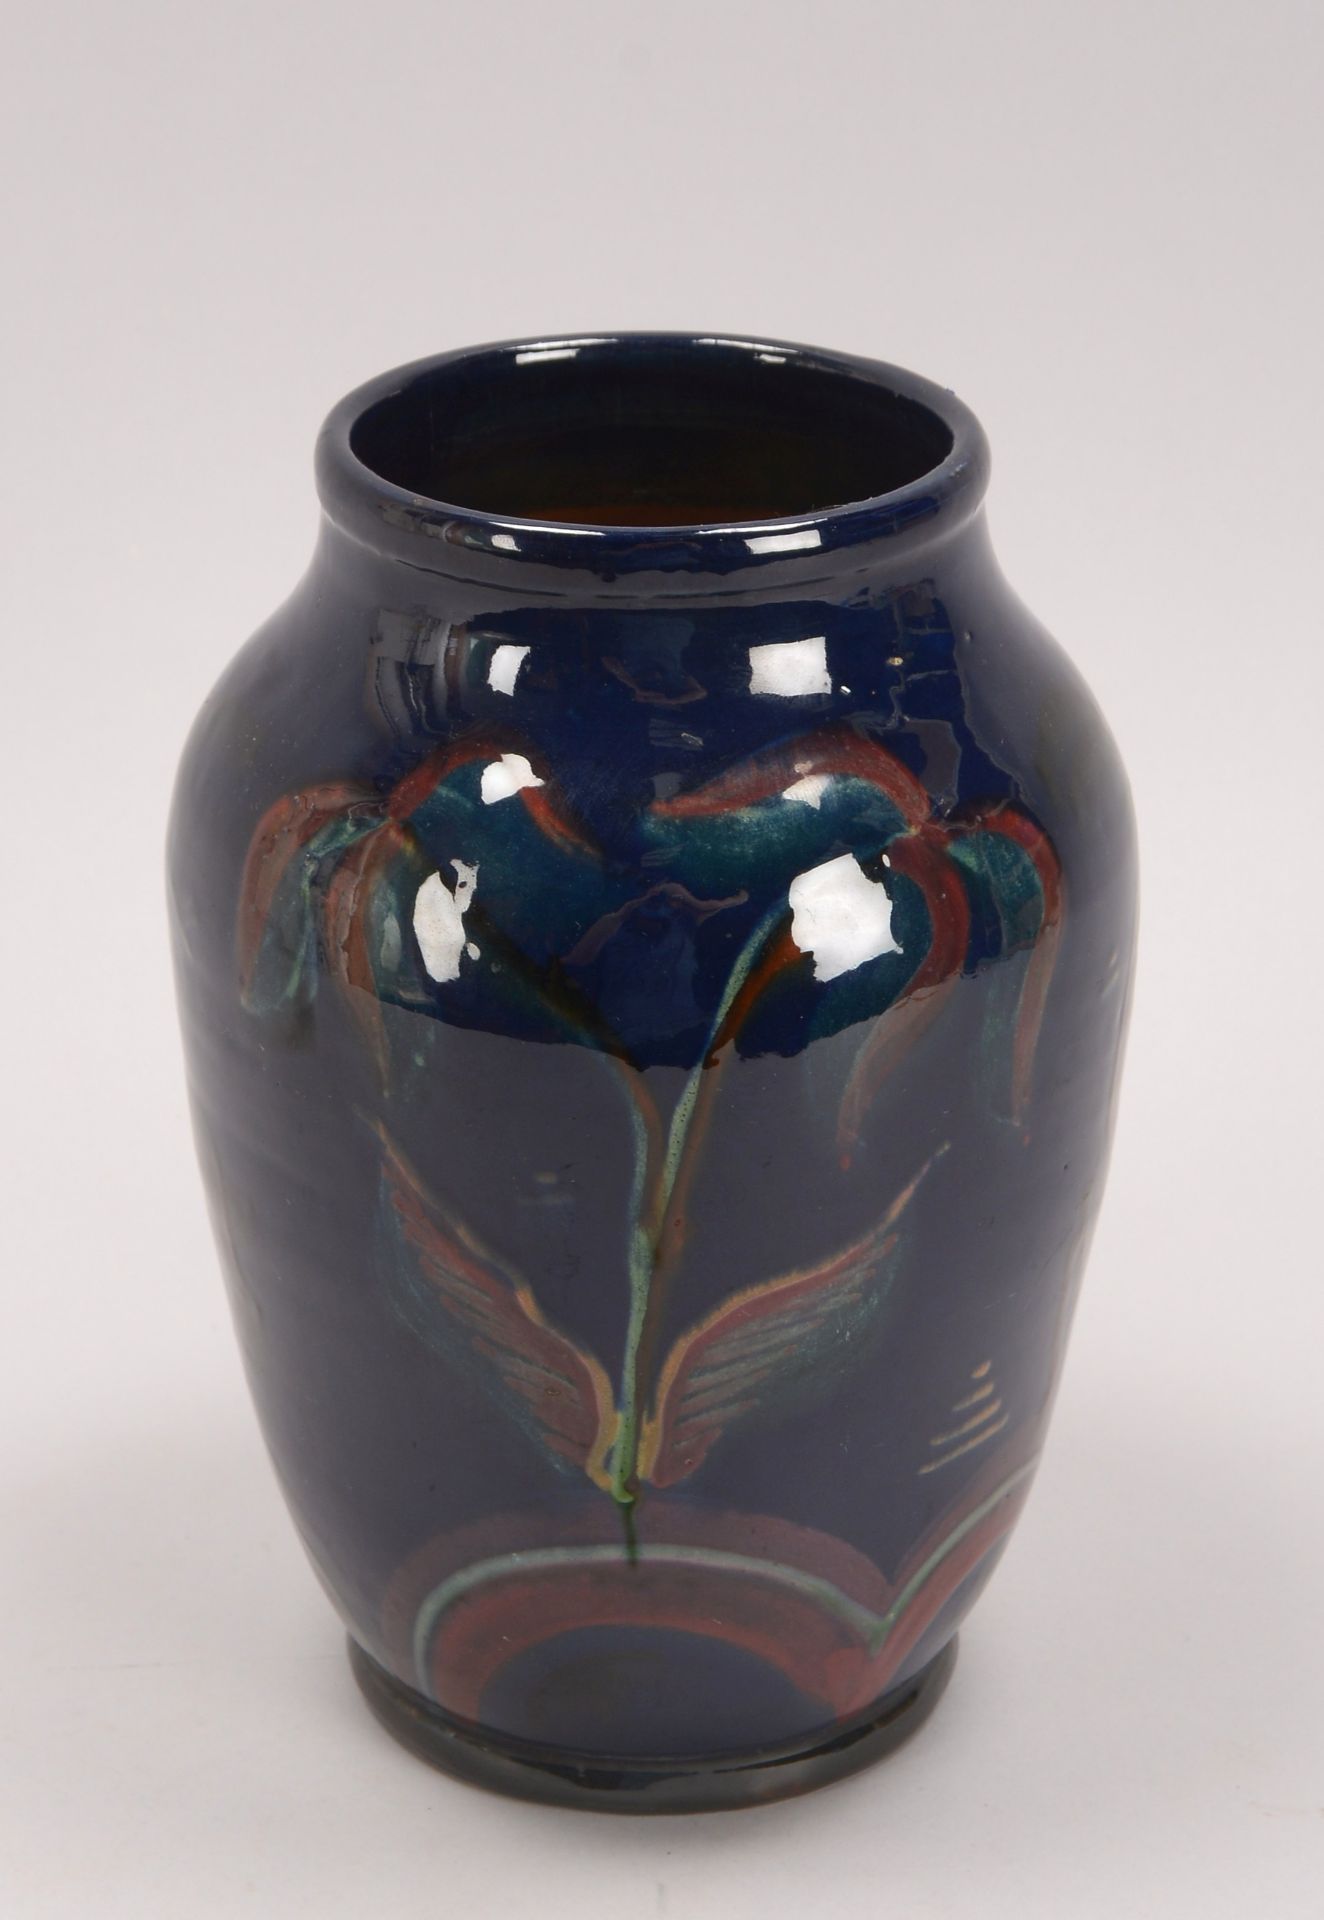 Keramikvase, glasiert, mit floralen Motiven und Tiermotiven (Steinbockdarstellungen), ritzsigniert ( - Image 2 of 2